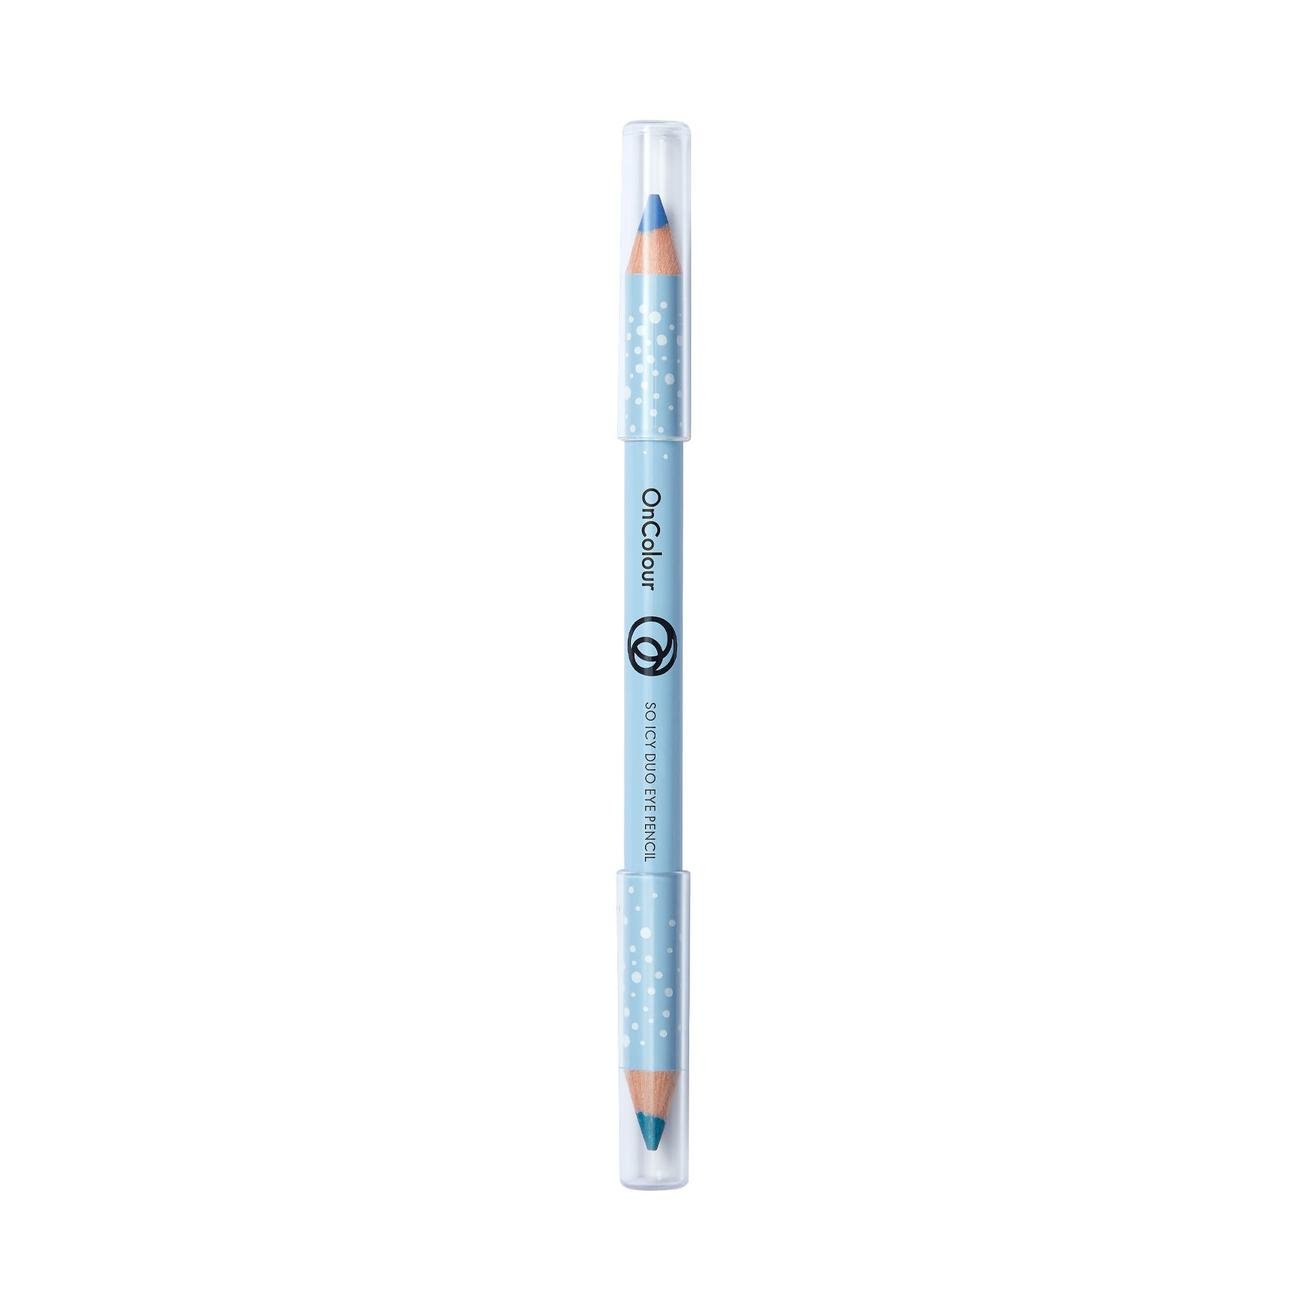 Aanbieding van OnColour So Icy Duo Eye Pencil voor 6,49€ bij Oriflame